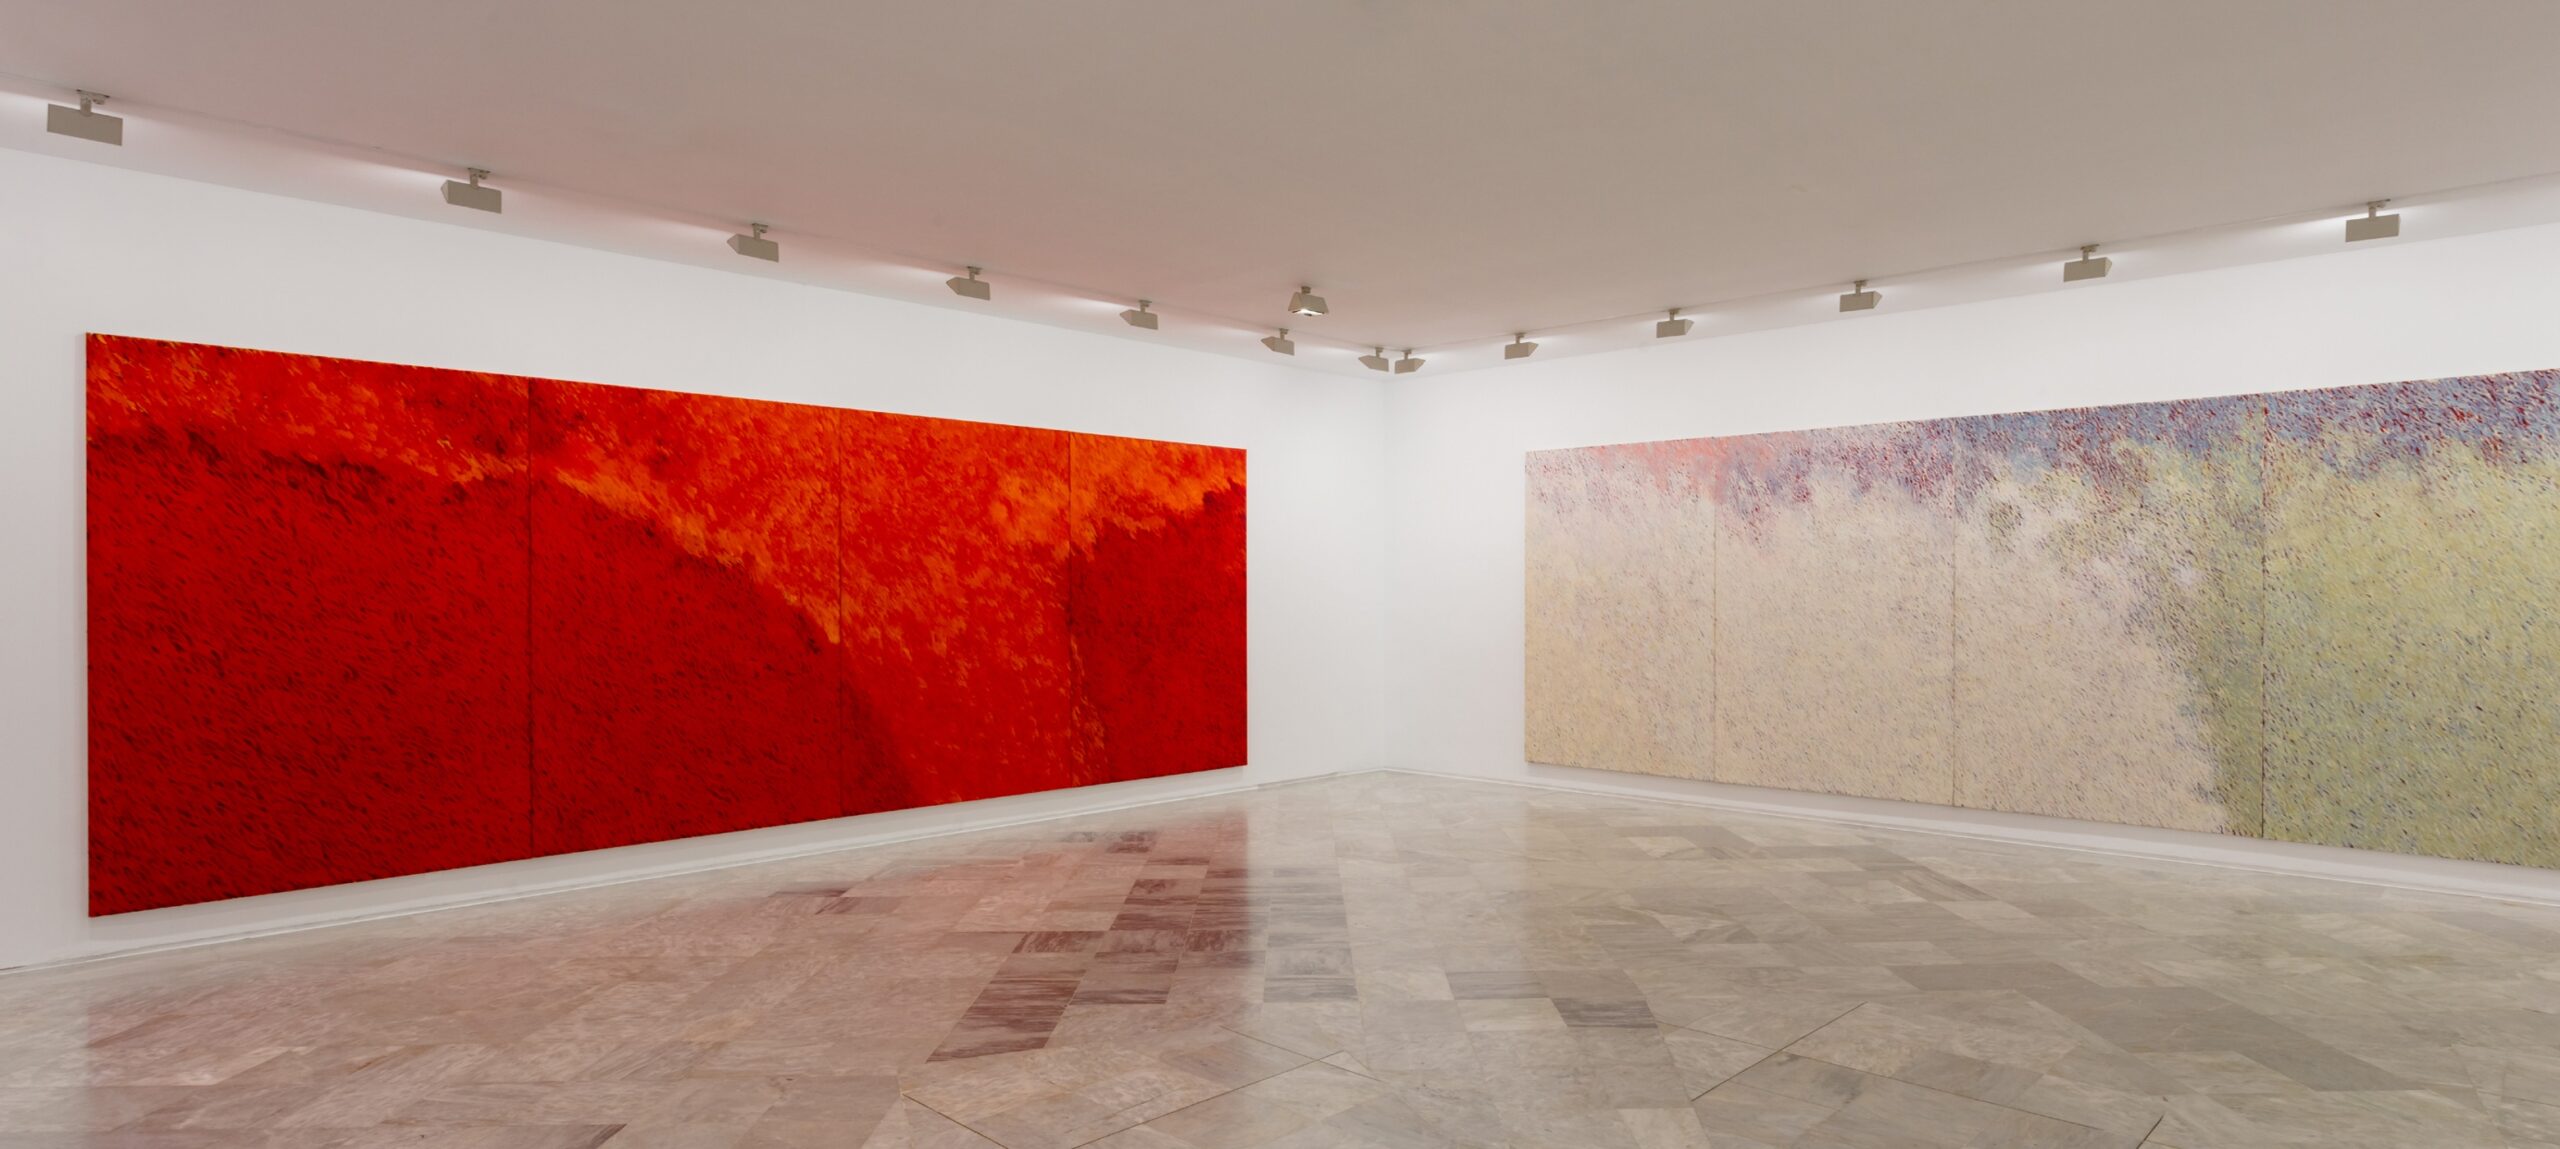 El CAAC inaugura «Devenir pintura», en la que participan artistas andaluces como Soledad Sevilla o Alfonso Albacete